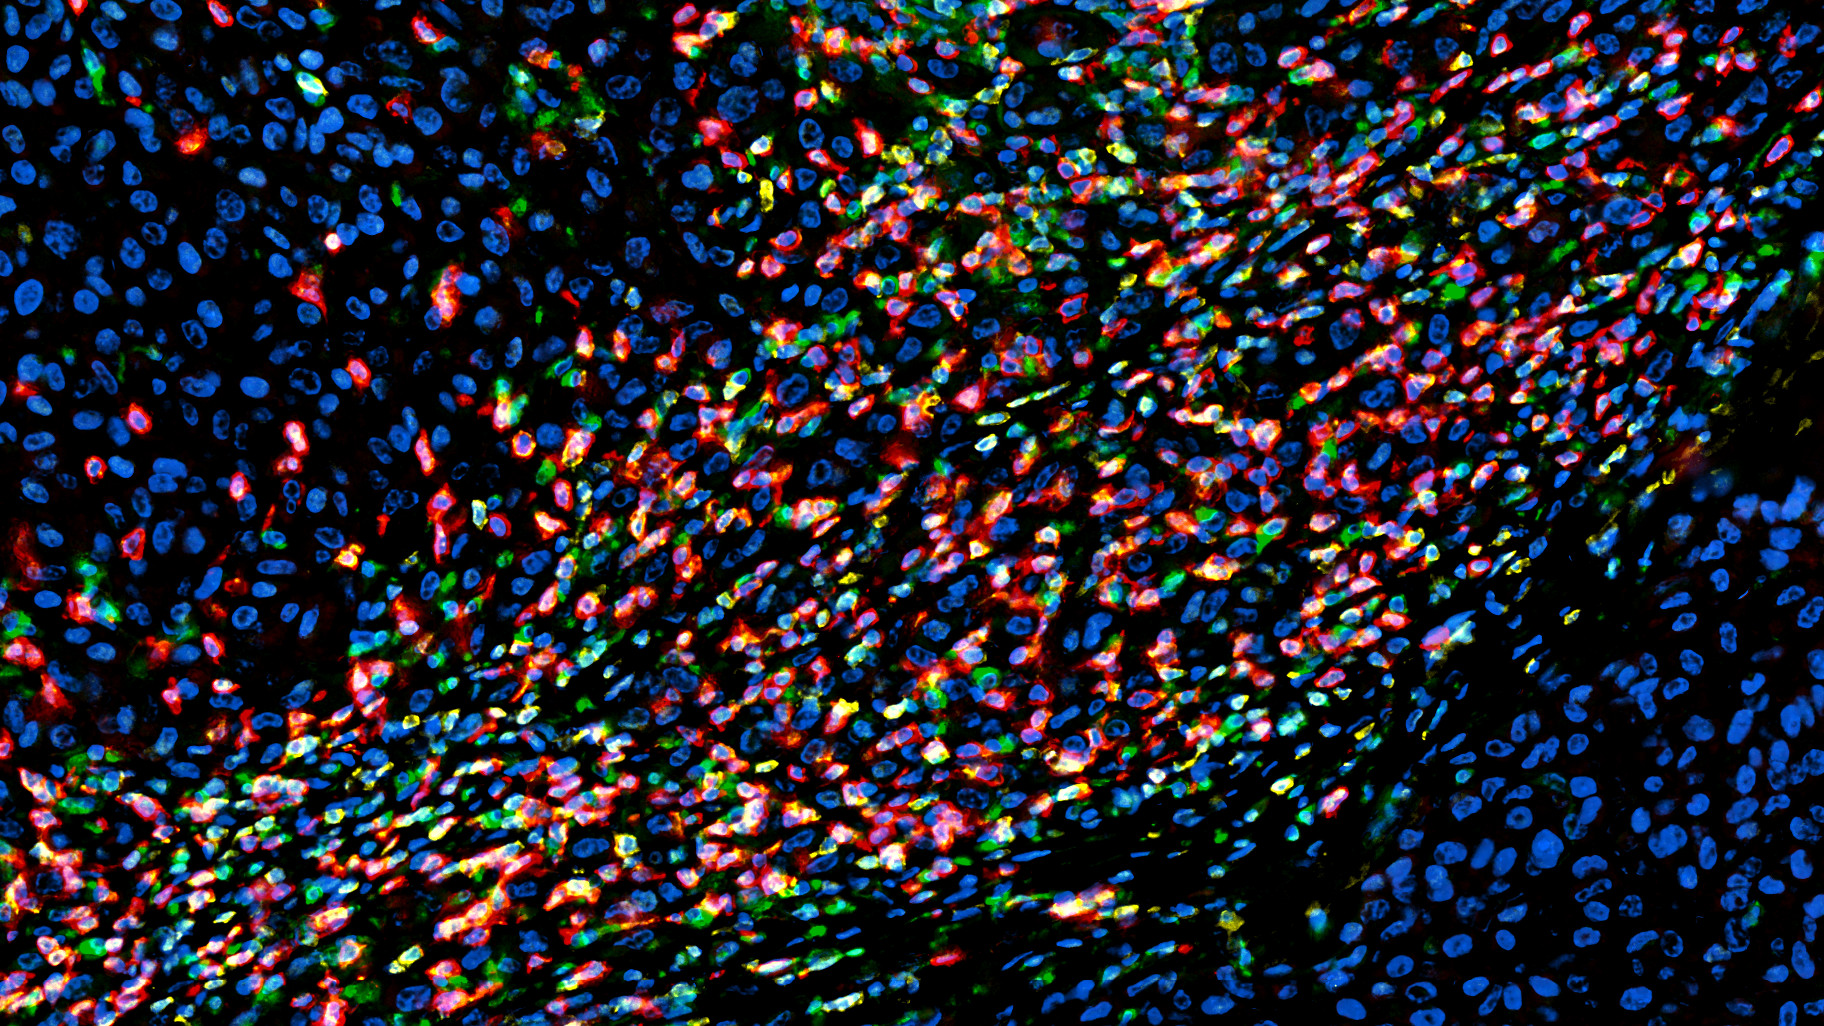 Mikroskopische Aufnahme von humanem Melanomgewebe (Hautkrebs). Bunt eingefärbt sind eindringende Immunzellen, blau erscheinen Tumorzellen.